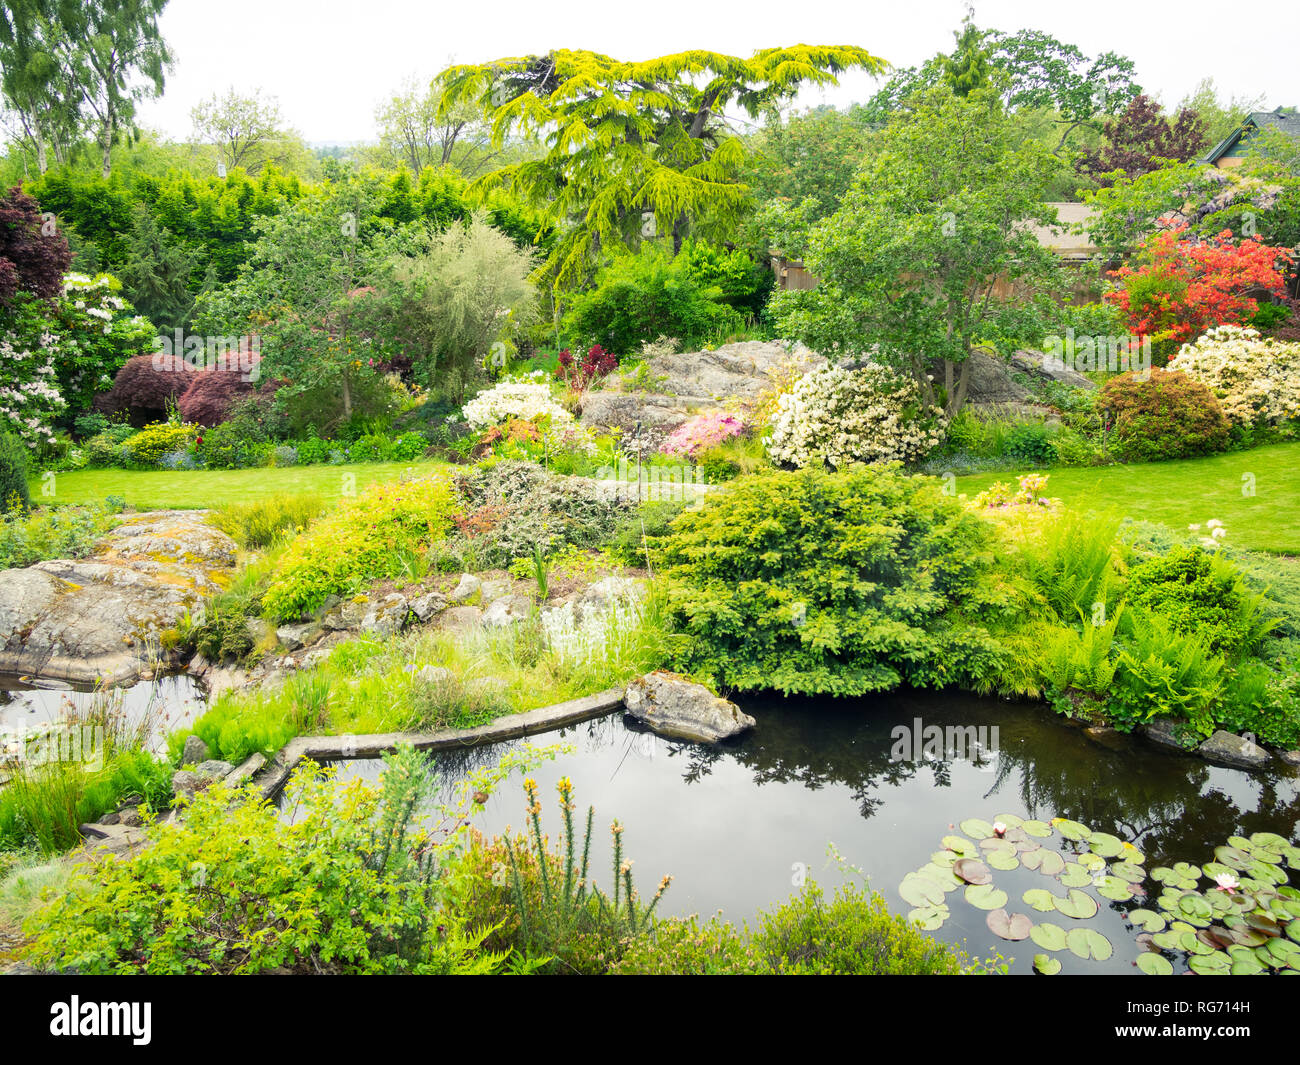 Ein Blick auf den schönen Garten (Abkhazi Abkhazi Gardens) im Frühjahr in Victoria, British Columbia, Kanada. Stockfoto